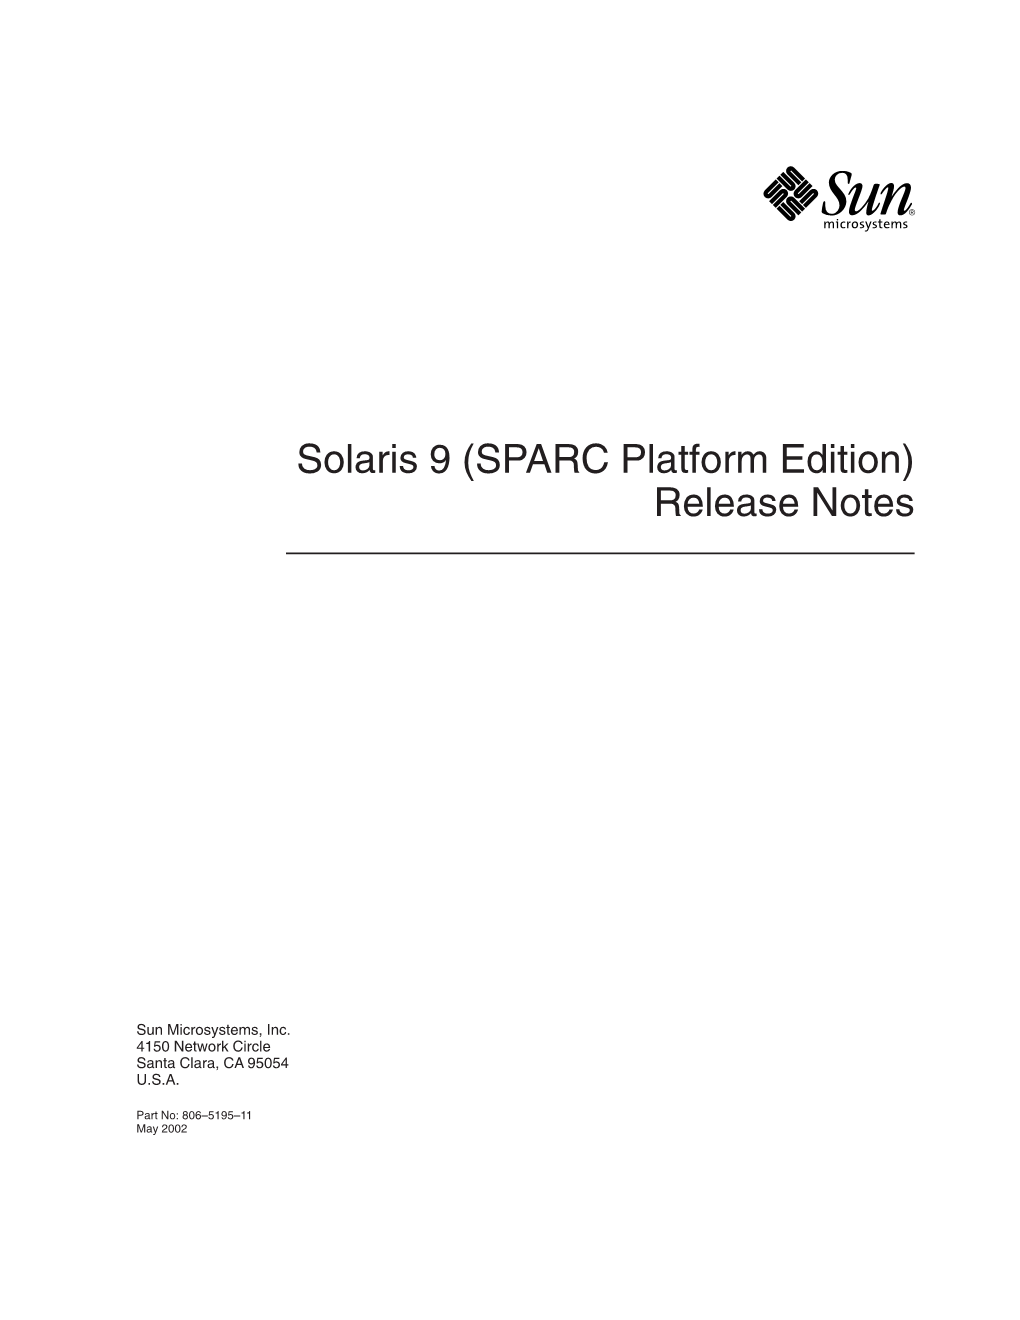 Solaris 9 (SPARC Platform Edition) Release Notes